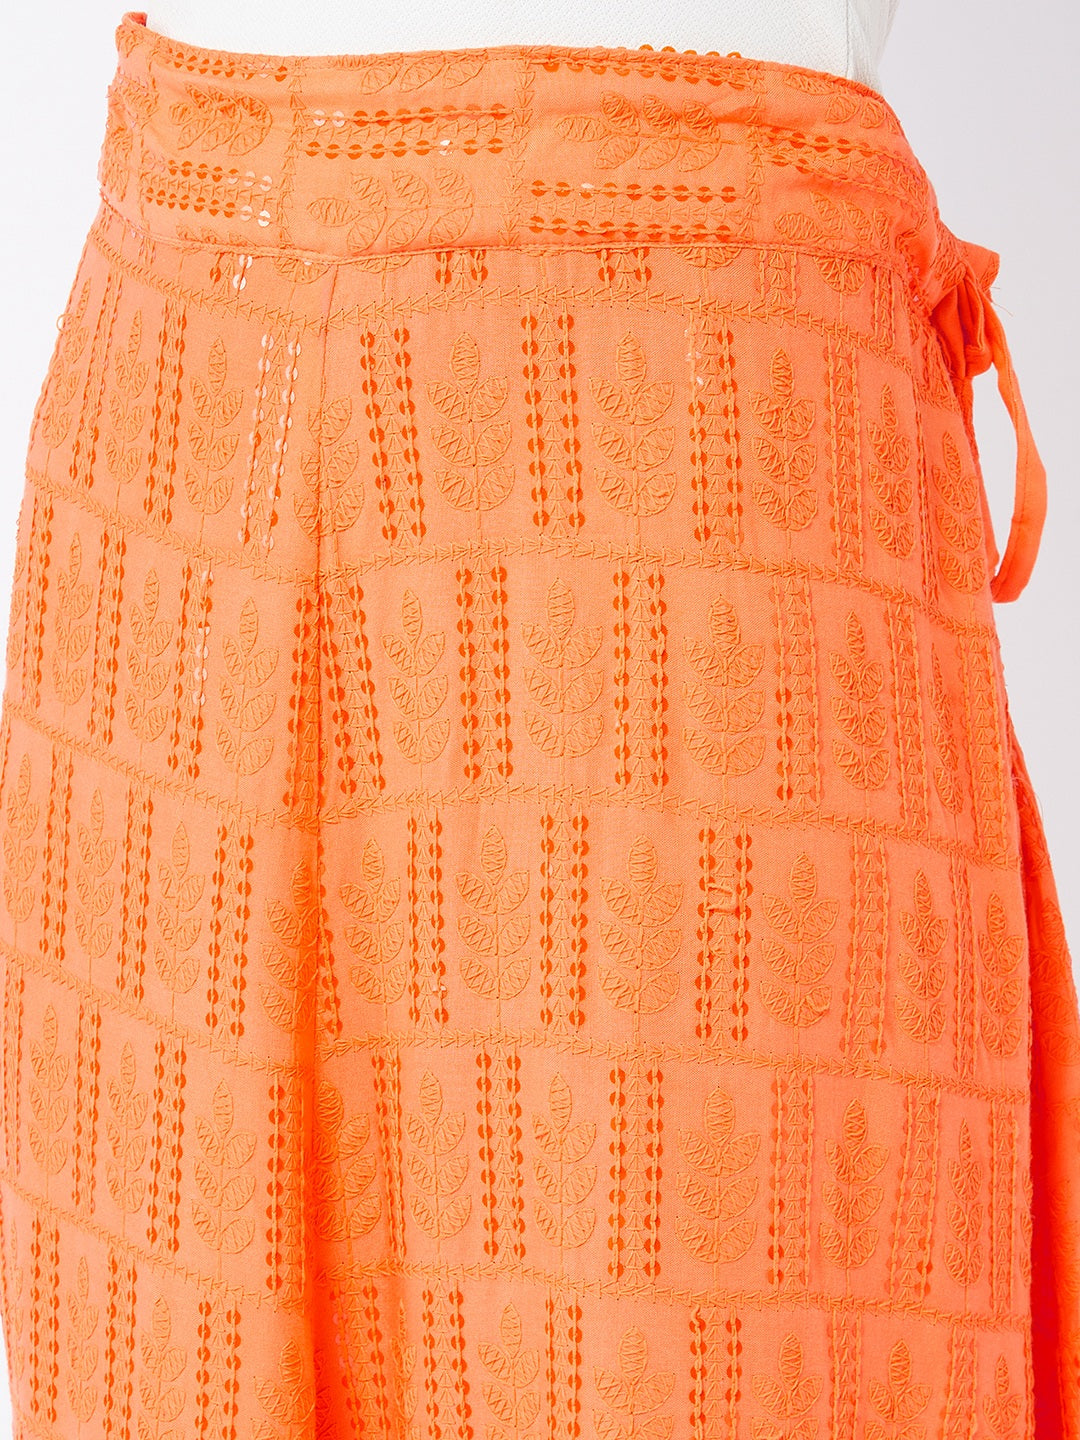 Peach Orange Chikankari Skirt